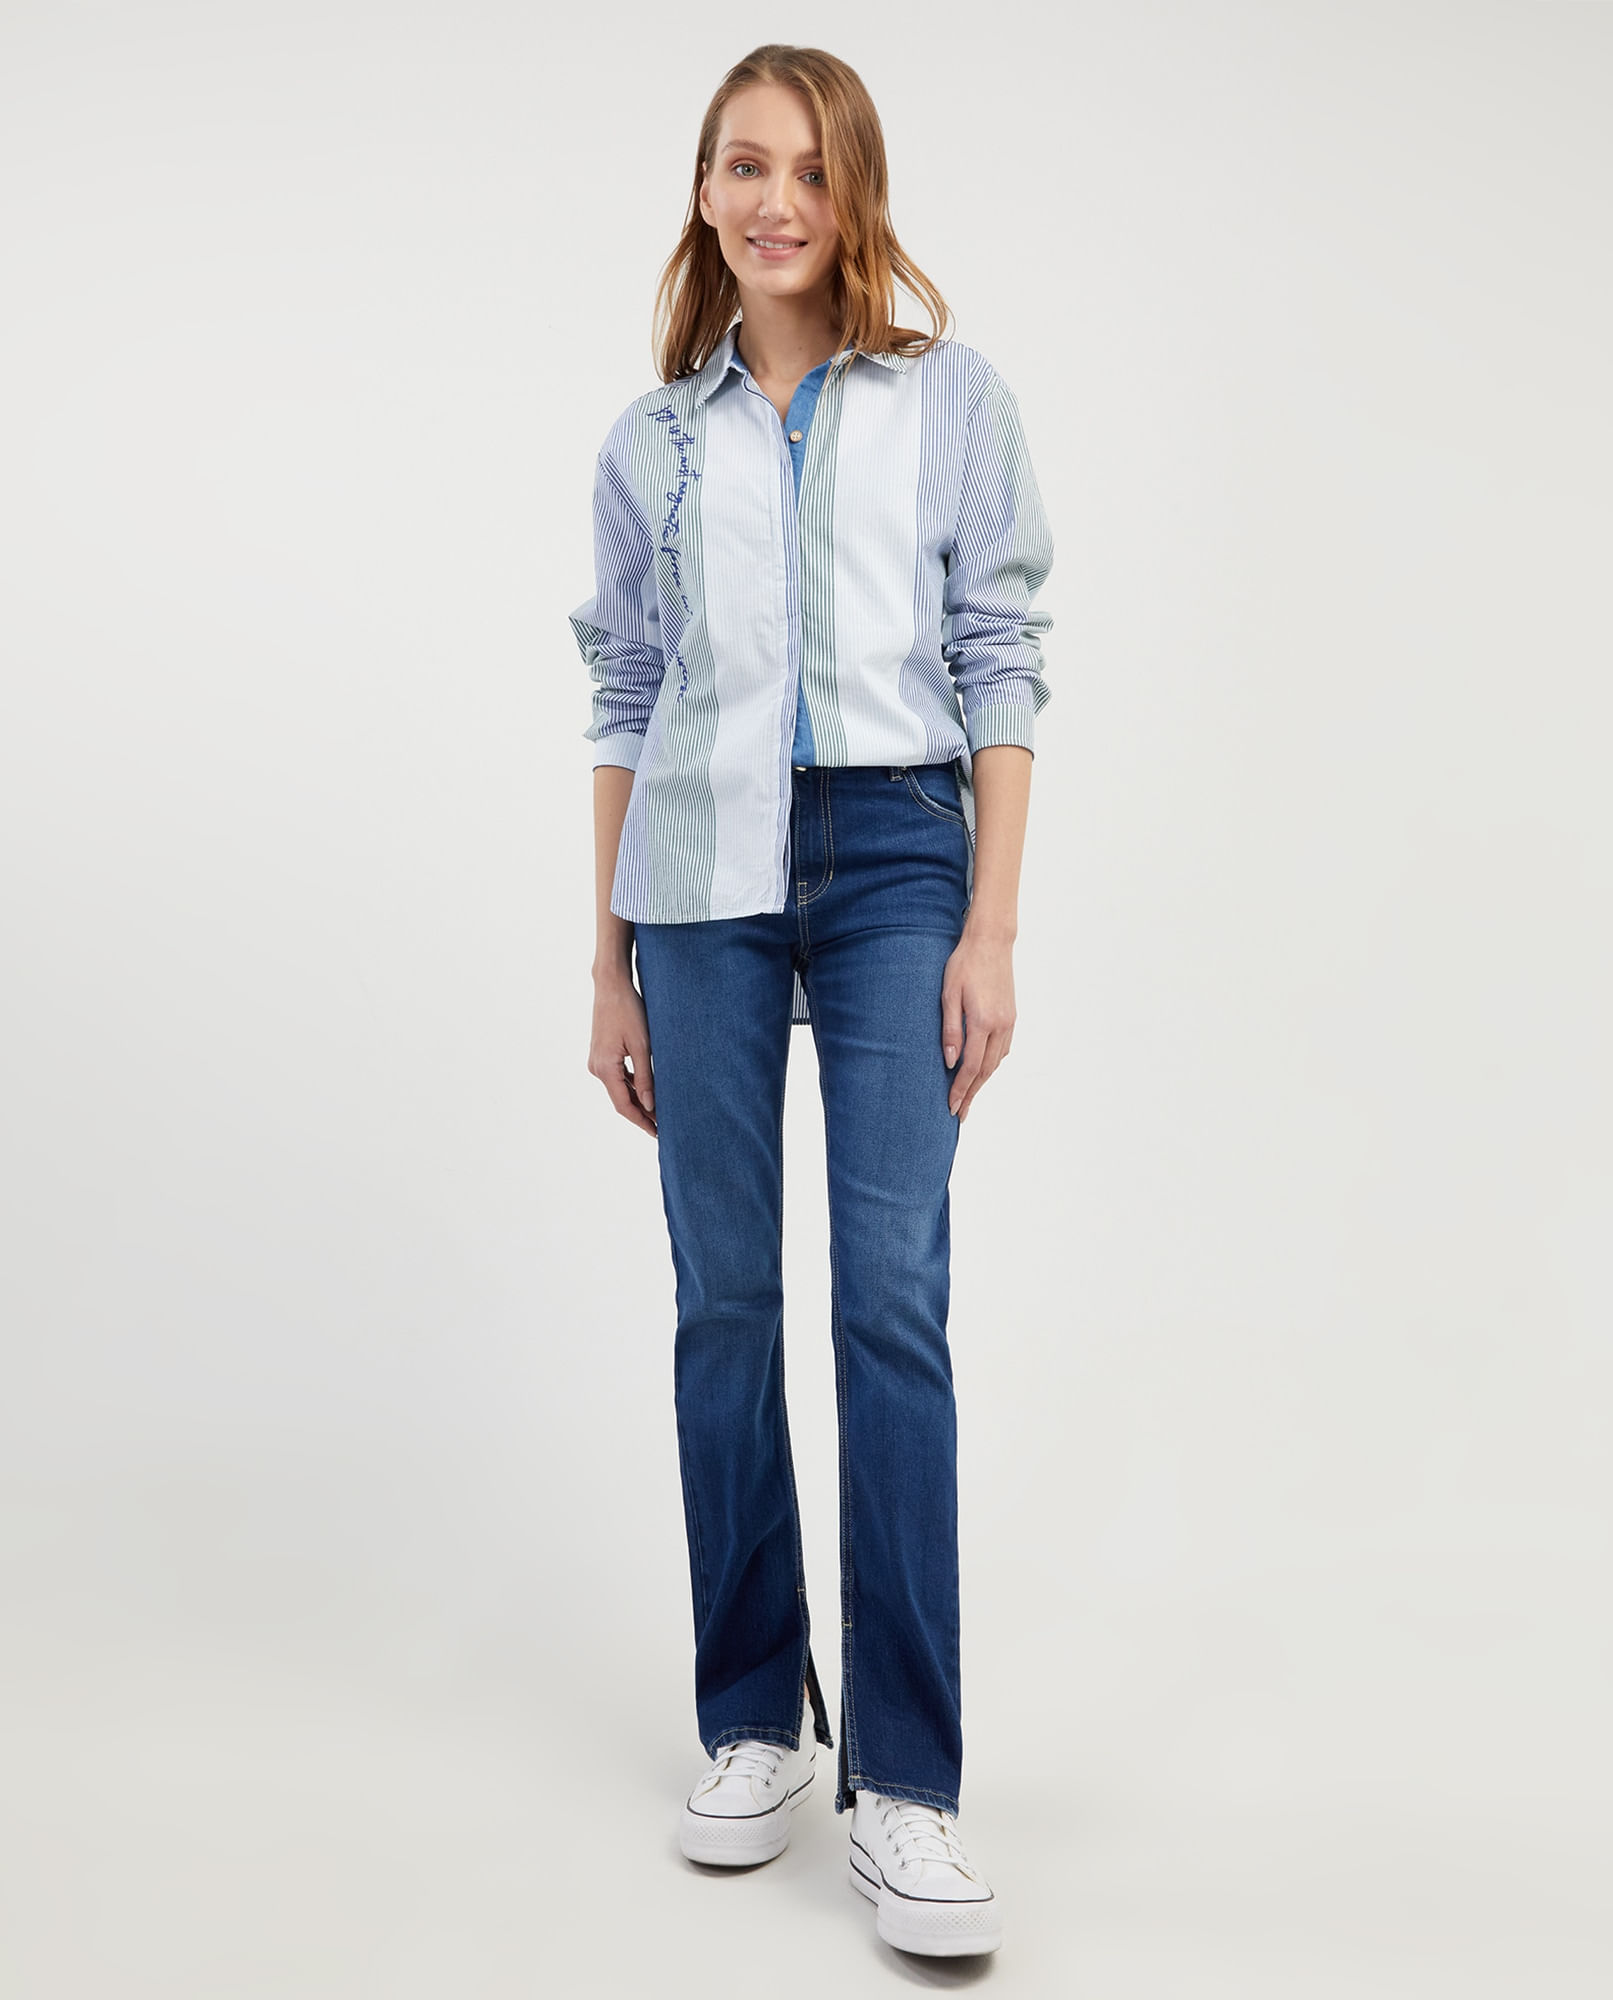 Pantalones de mezclilla para mujer EDC Esprit talla 31 bolsillos azules  botones con cremallera altura media cómodos